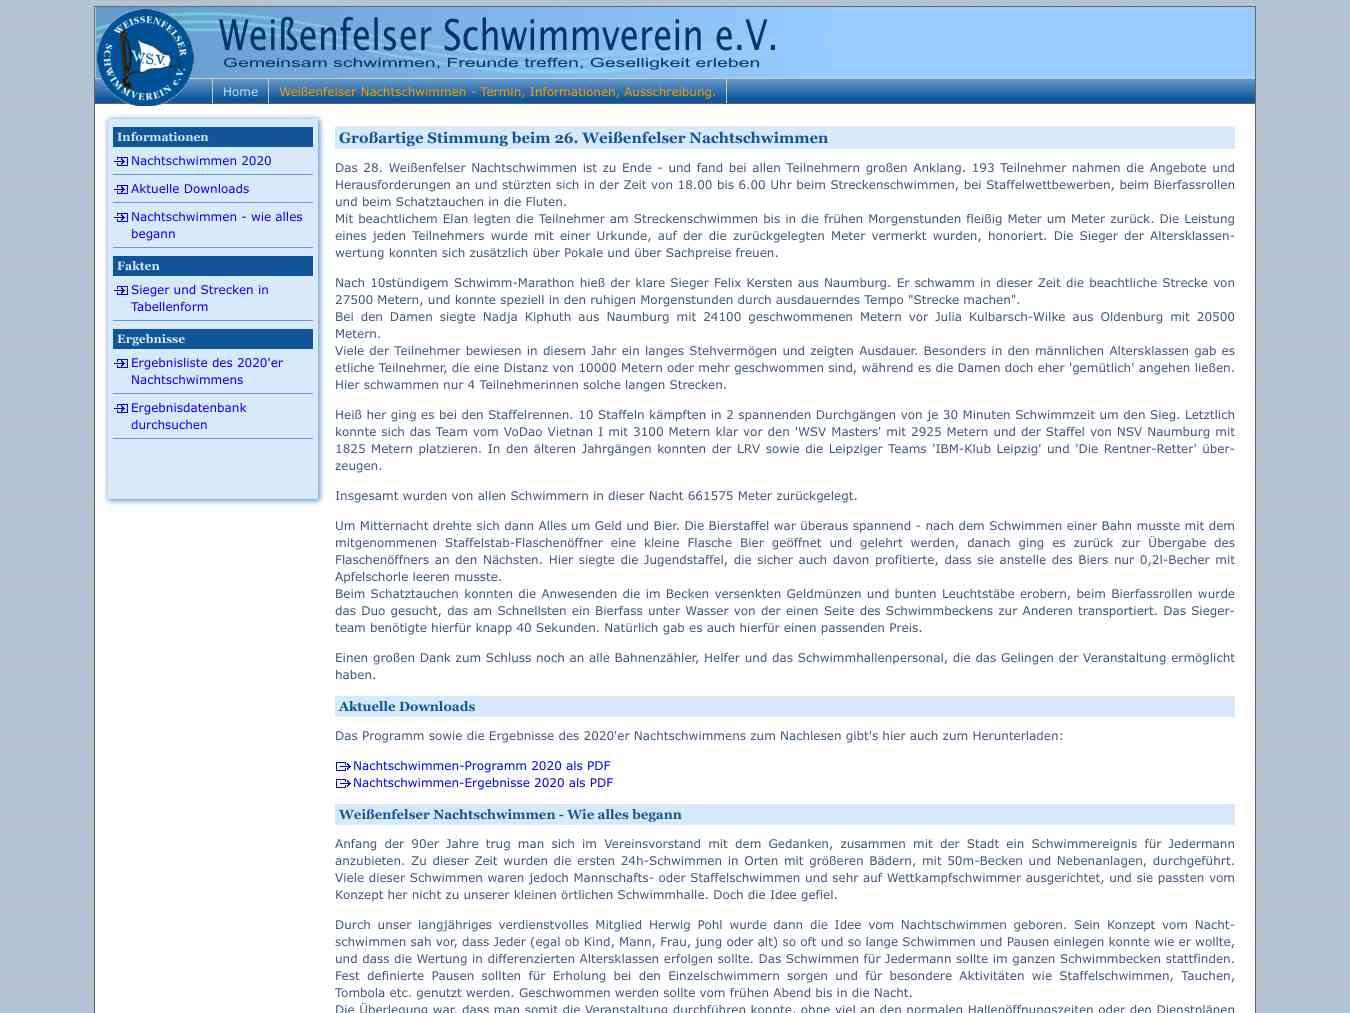 Veranstalterhomepage - http://www.weissenfelser-schwimmverein.de/nsw/nsw_aktuell.html